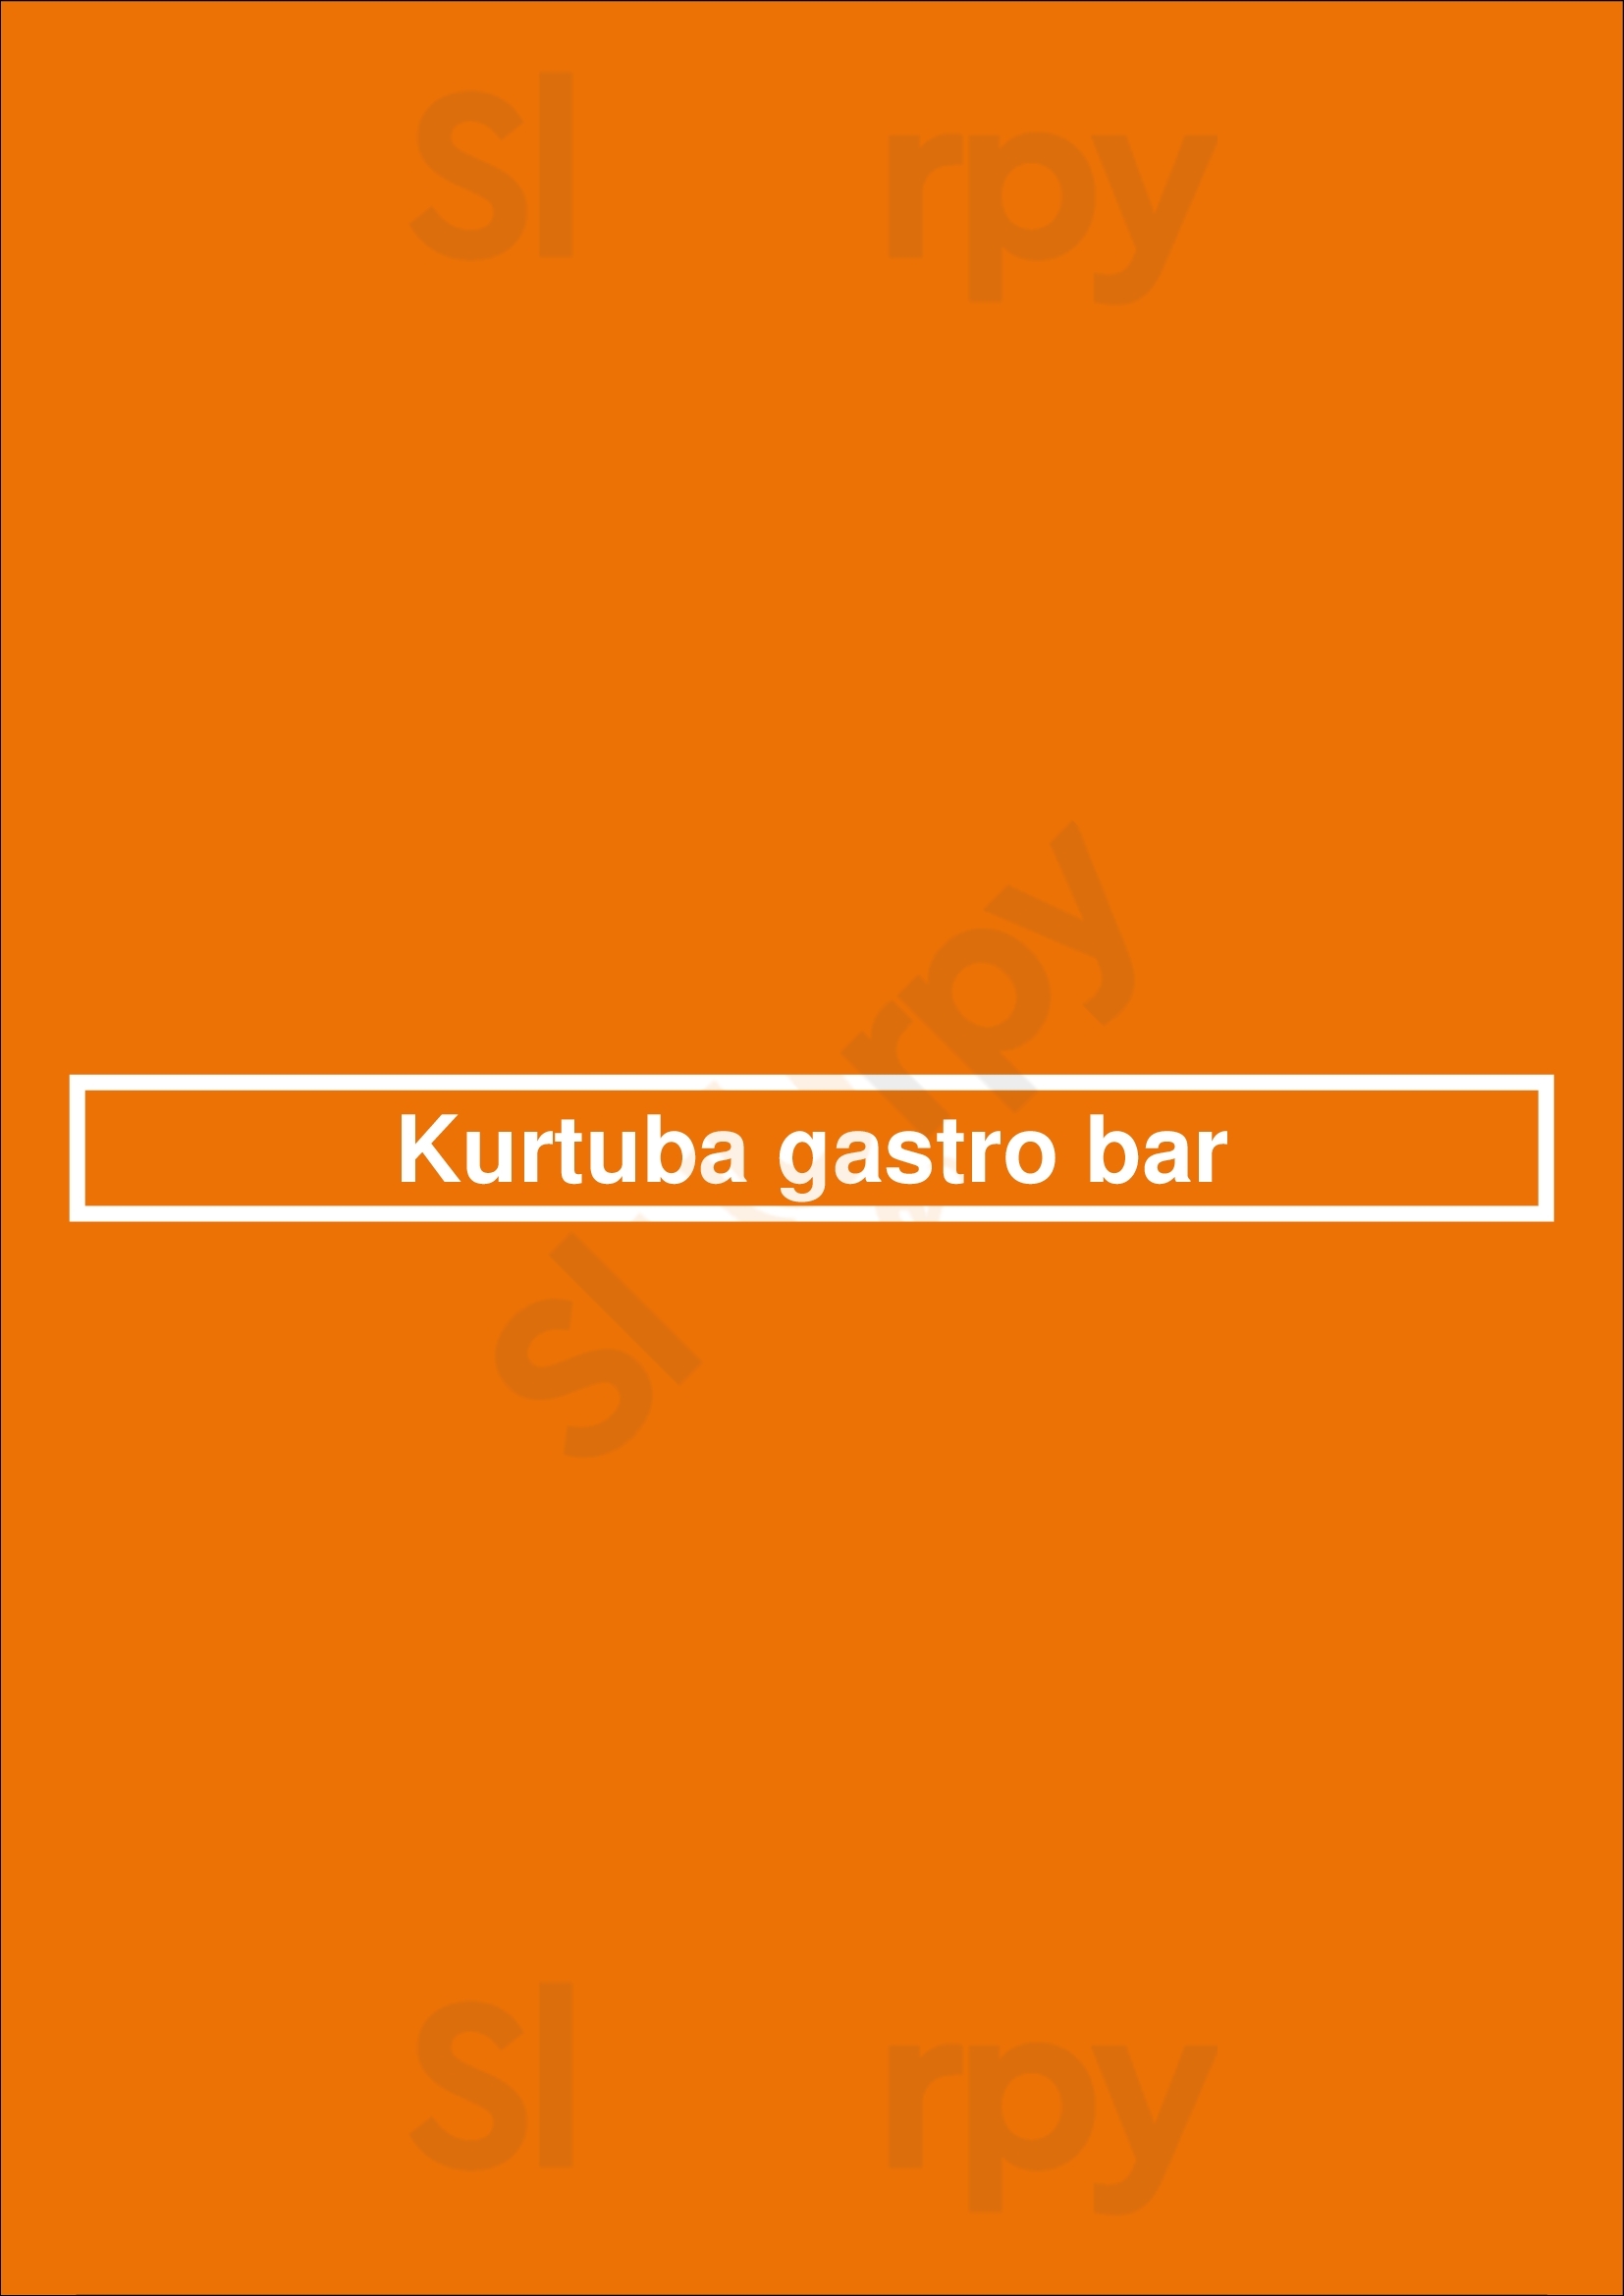 Kurtuba Gastro Bar Córdoba Menu - 1